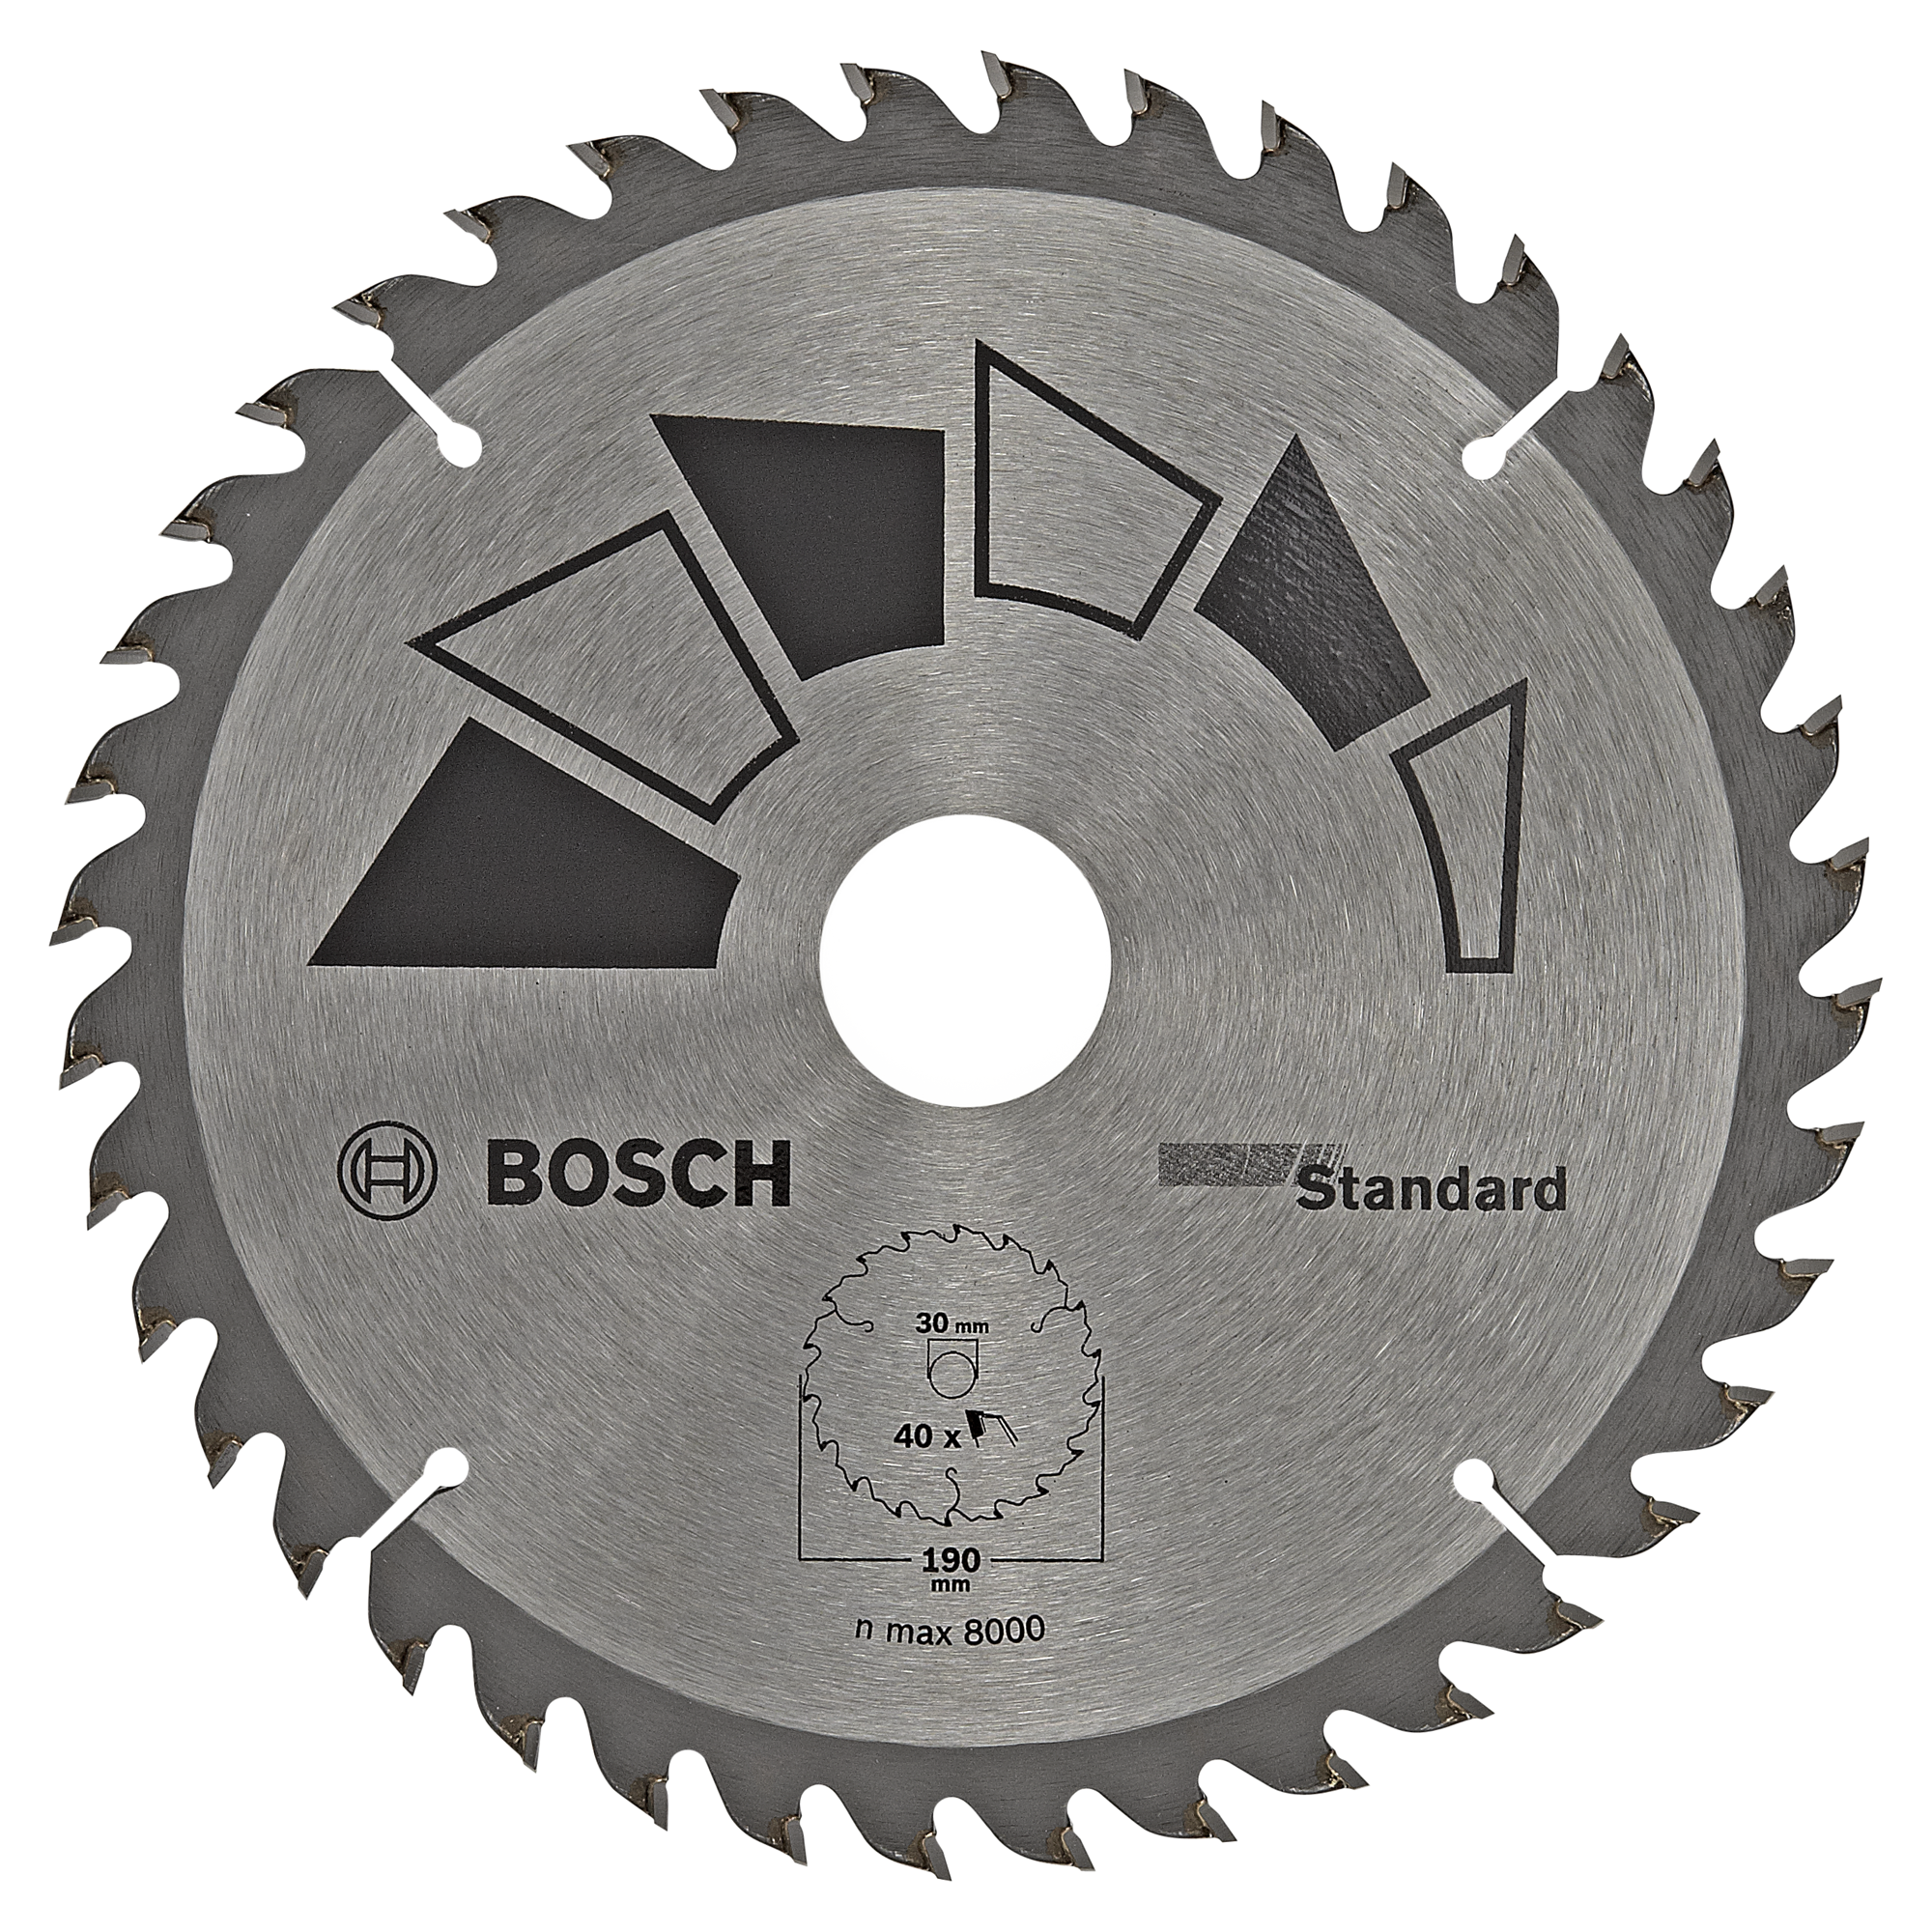 Bosch Kreissägeblatt „Standard“ Ø 190 mm